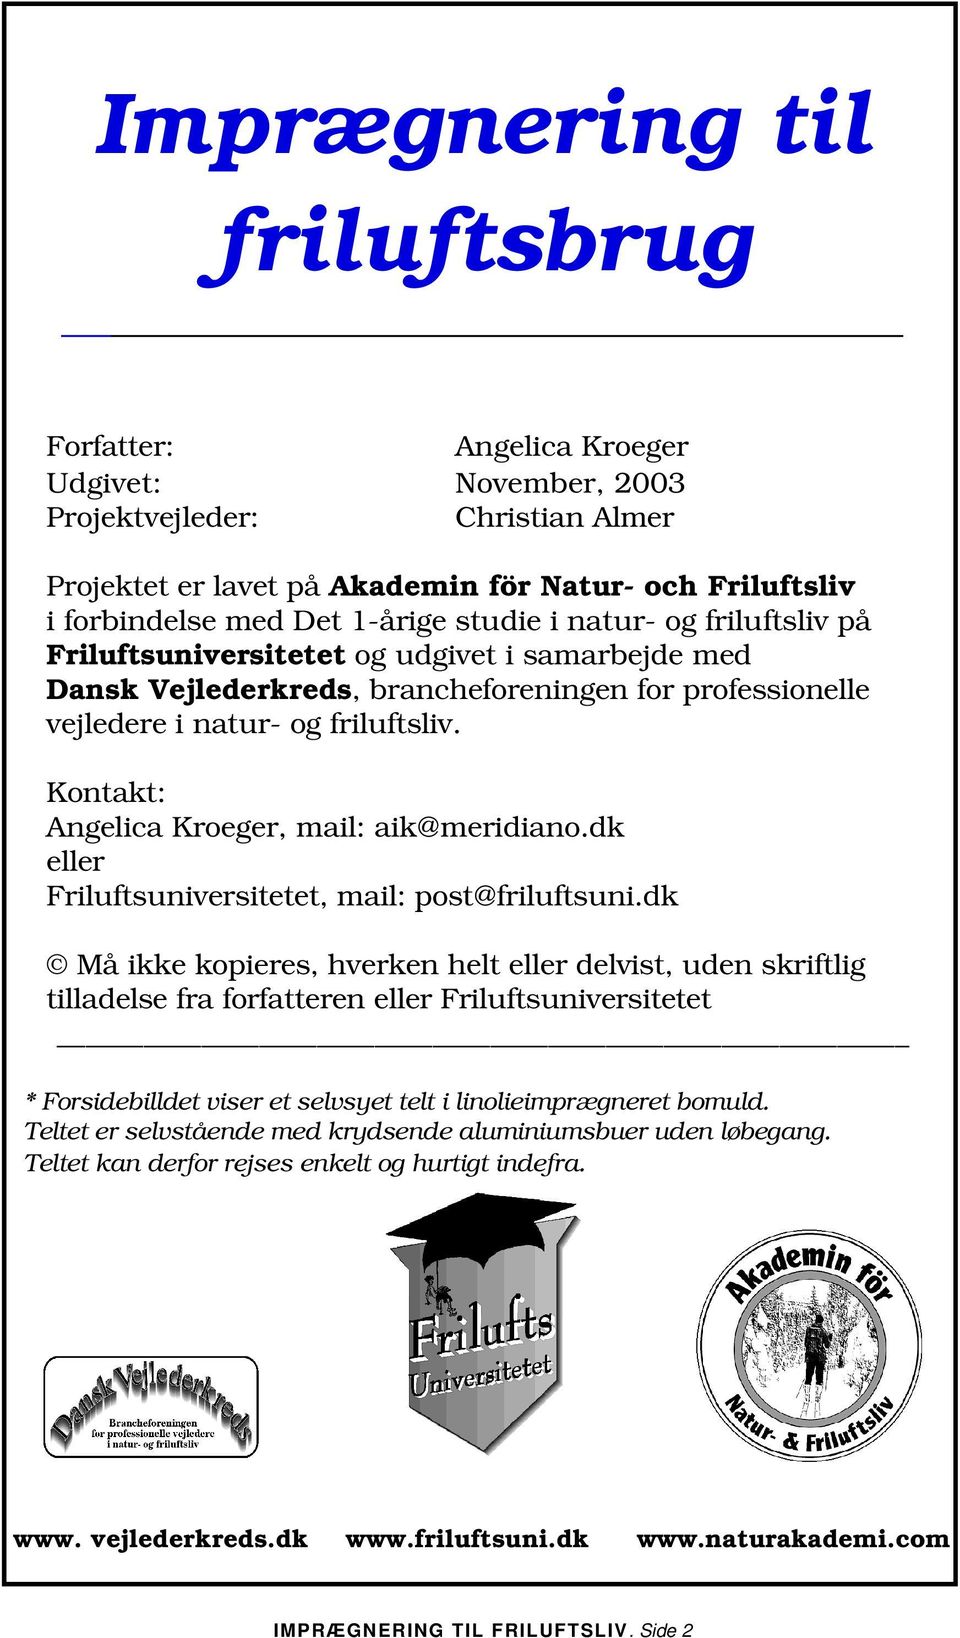 Kontakt: Angelica Kroeger, mail: aik@meridiano.dk eller Friluftsuniversitetet, mail: post@friluftsuni.